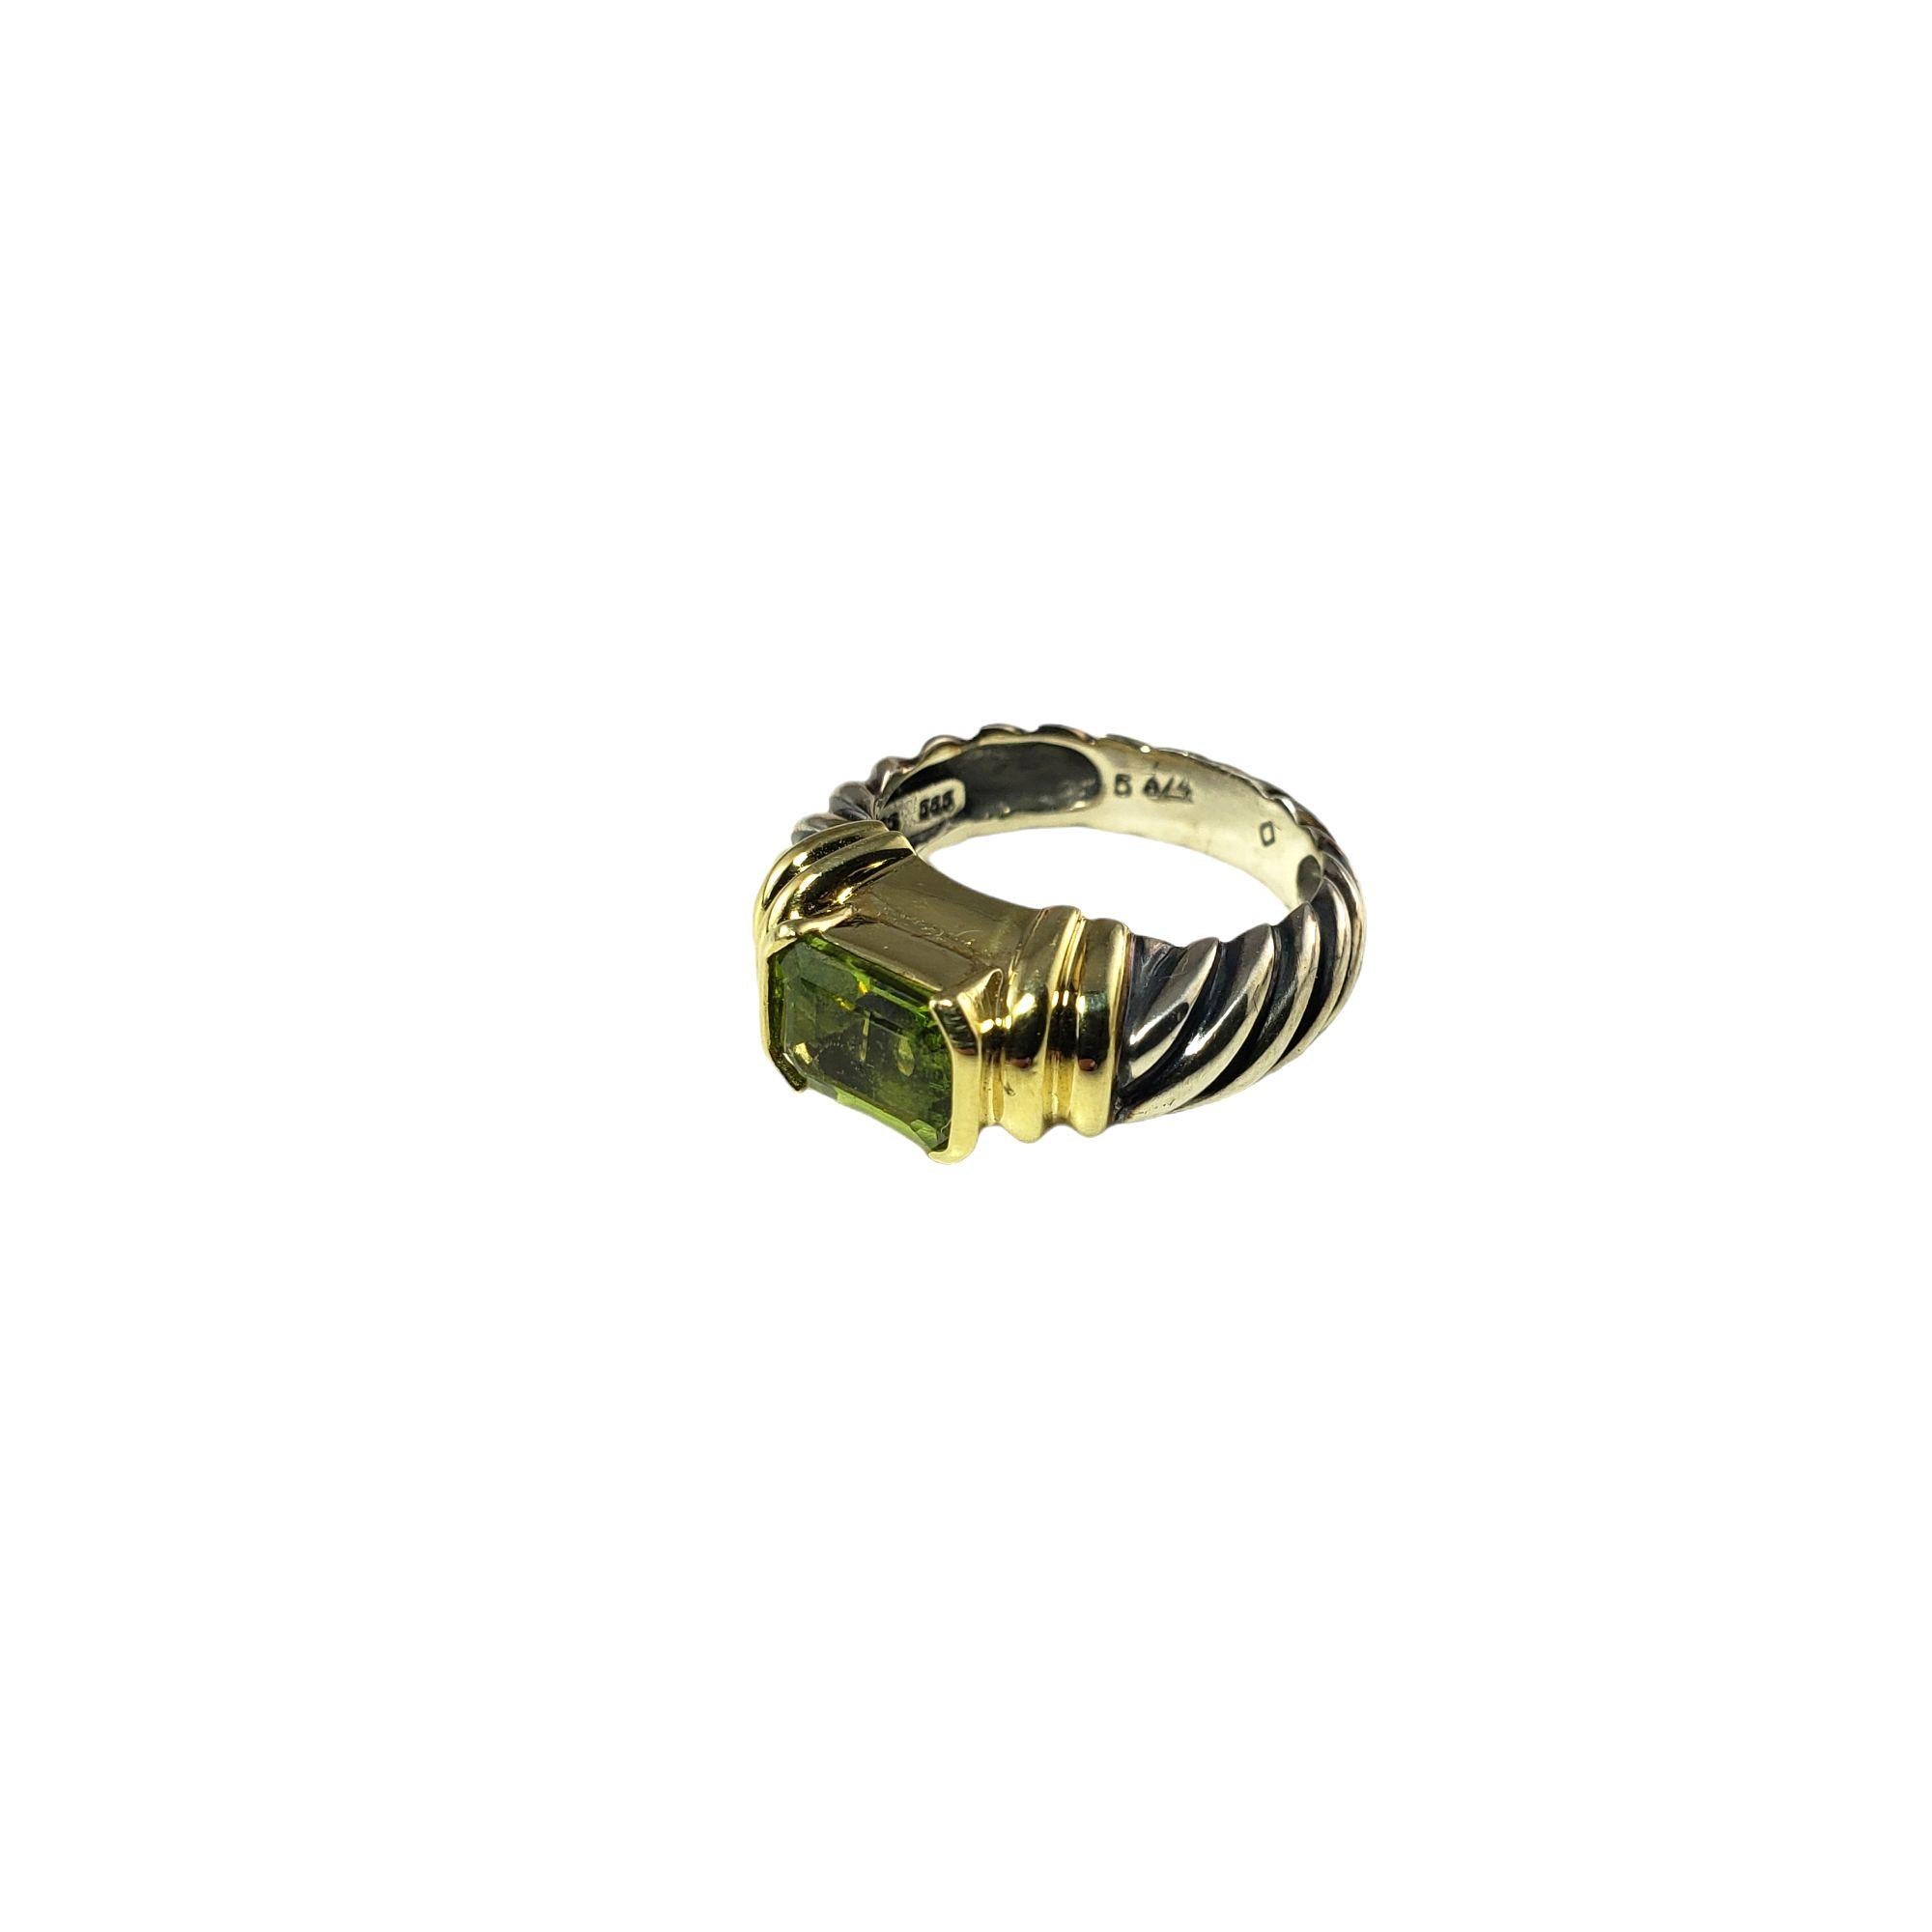 David Yurman Sterling Silver and 14 Karat Yellow Gold Prasiolite Metro Ring Size 5.25-

This stunning ring by David Yurman features one prasiolite gemstone (8 mm x 6 mm) set in beautifully detailed sterling silver and 14K yellow gold. Width: 7 mm.